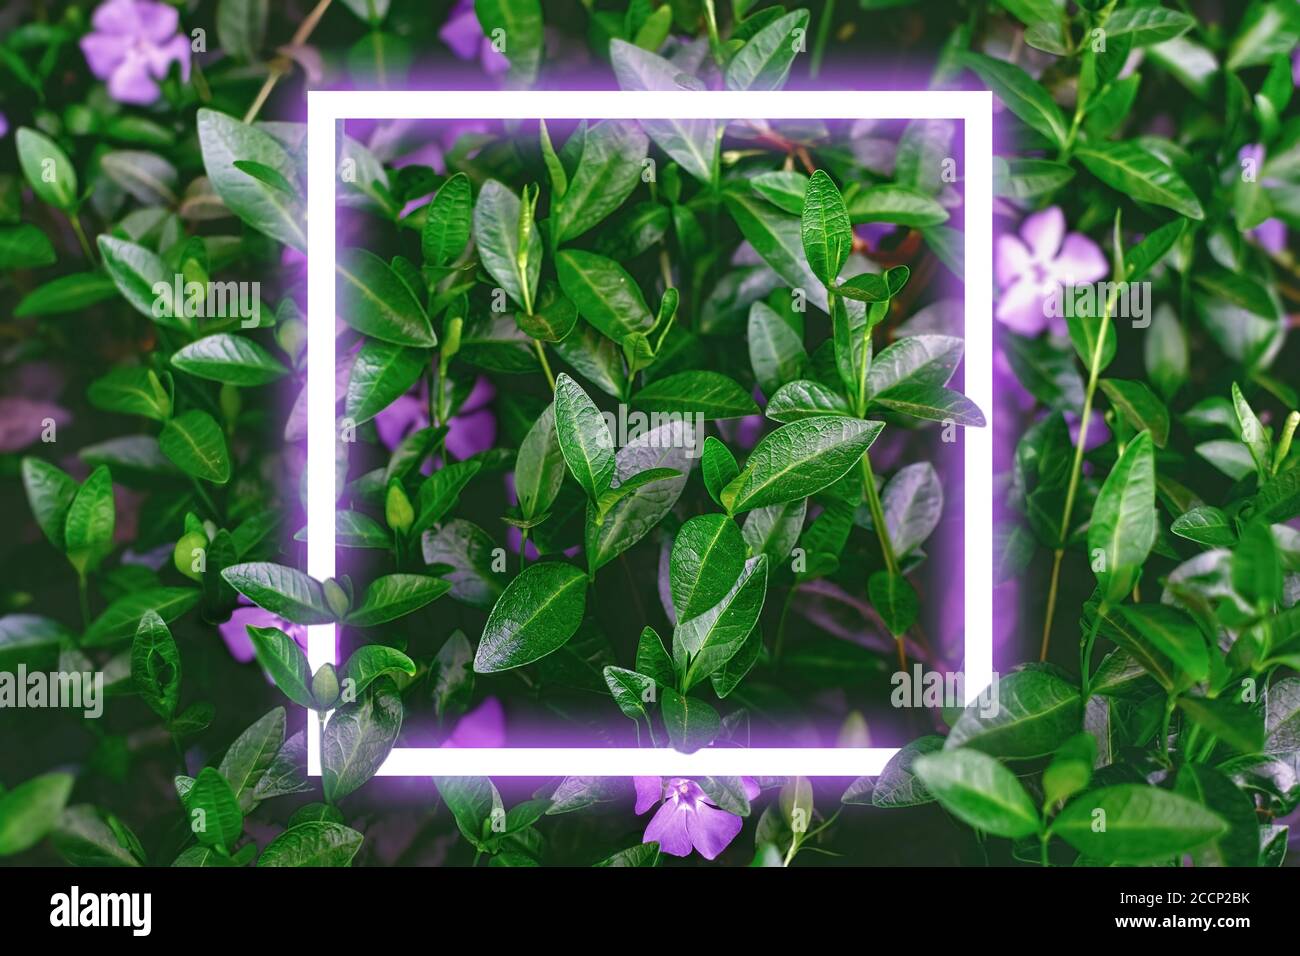 Neon-Rahmen bei dunklen Blättern mit Blumen Hintergrund. Kann für Werbebanner oder Werbehintergrund verwendet werden Stockfoto